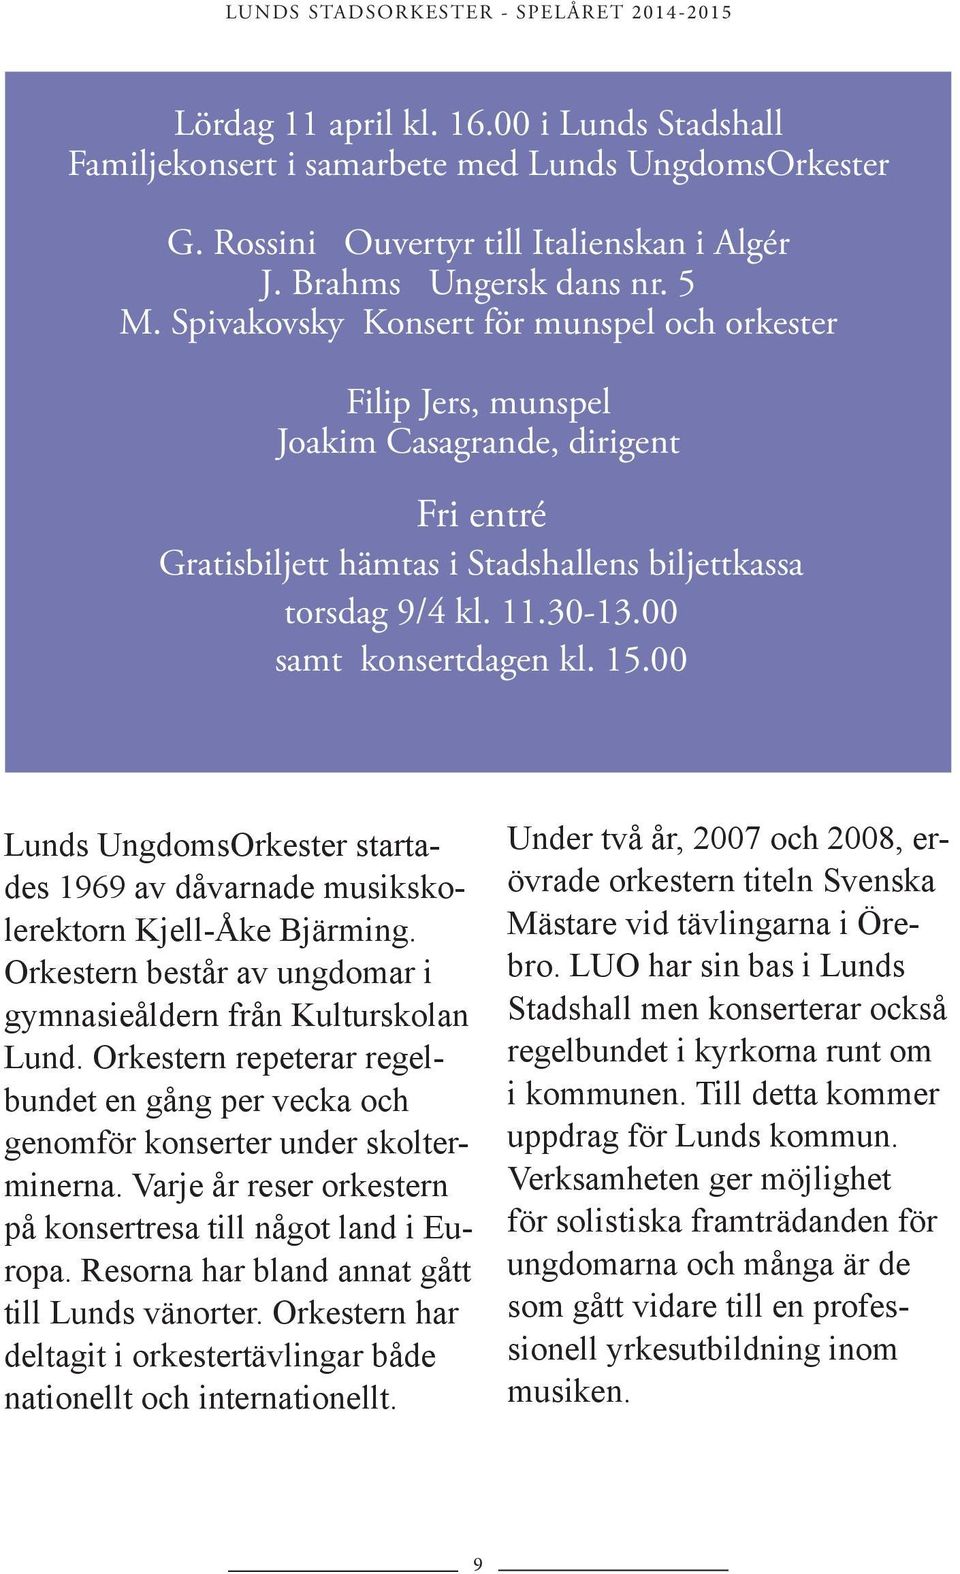 00 samt konsertdagen kl. 15.00 Lunds UngdomsOrkester startades 1969 av dåvarnade musikskolerektorn Kjell-Åke Bjärming. Orkestern består av ungdomar i gymnasieåldern från Kulturskolan Lund.